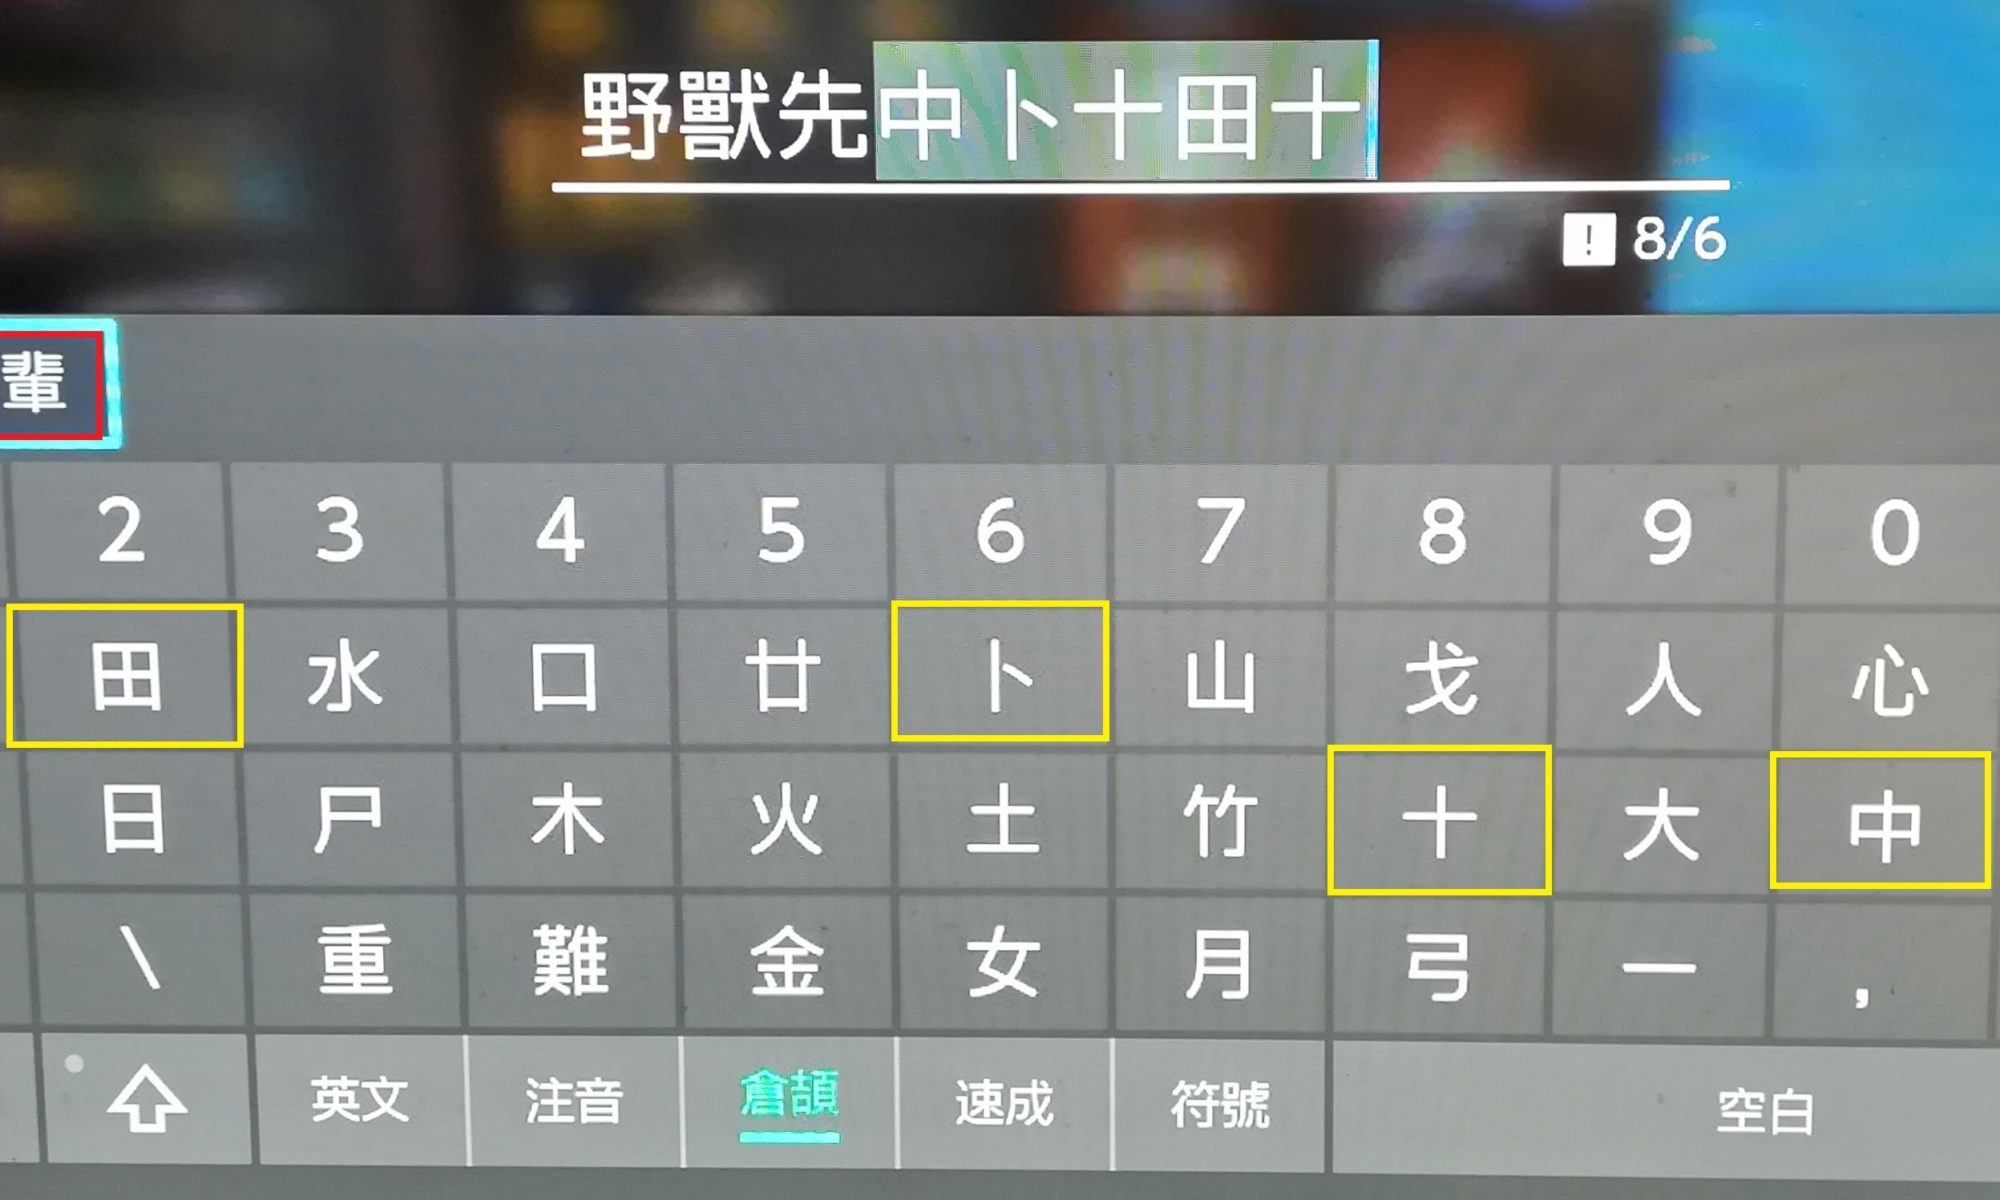 ポケモン剣盾 倉頡輸入法で漢字ニックネームを付ける方法 繁体字のみ テトリスの海外旅行